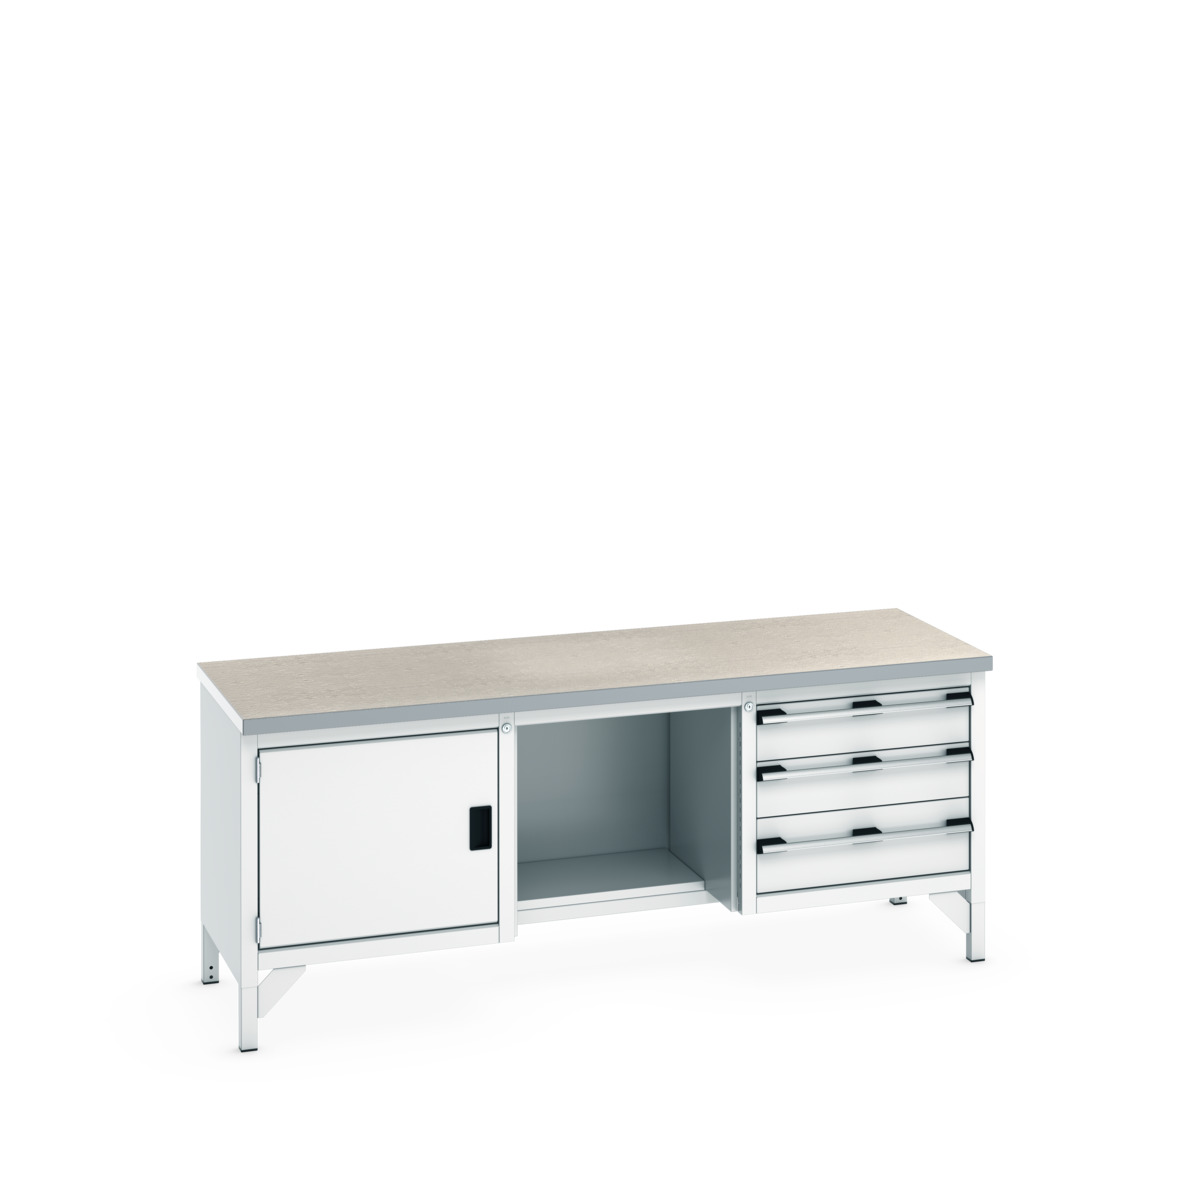 41002072.16V - cubio storage bench (lino)